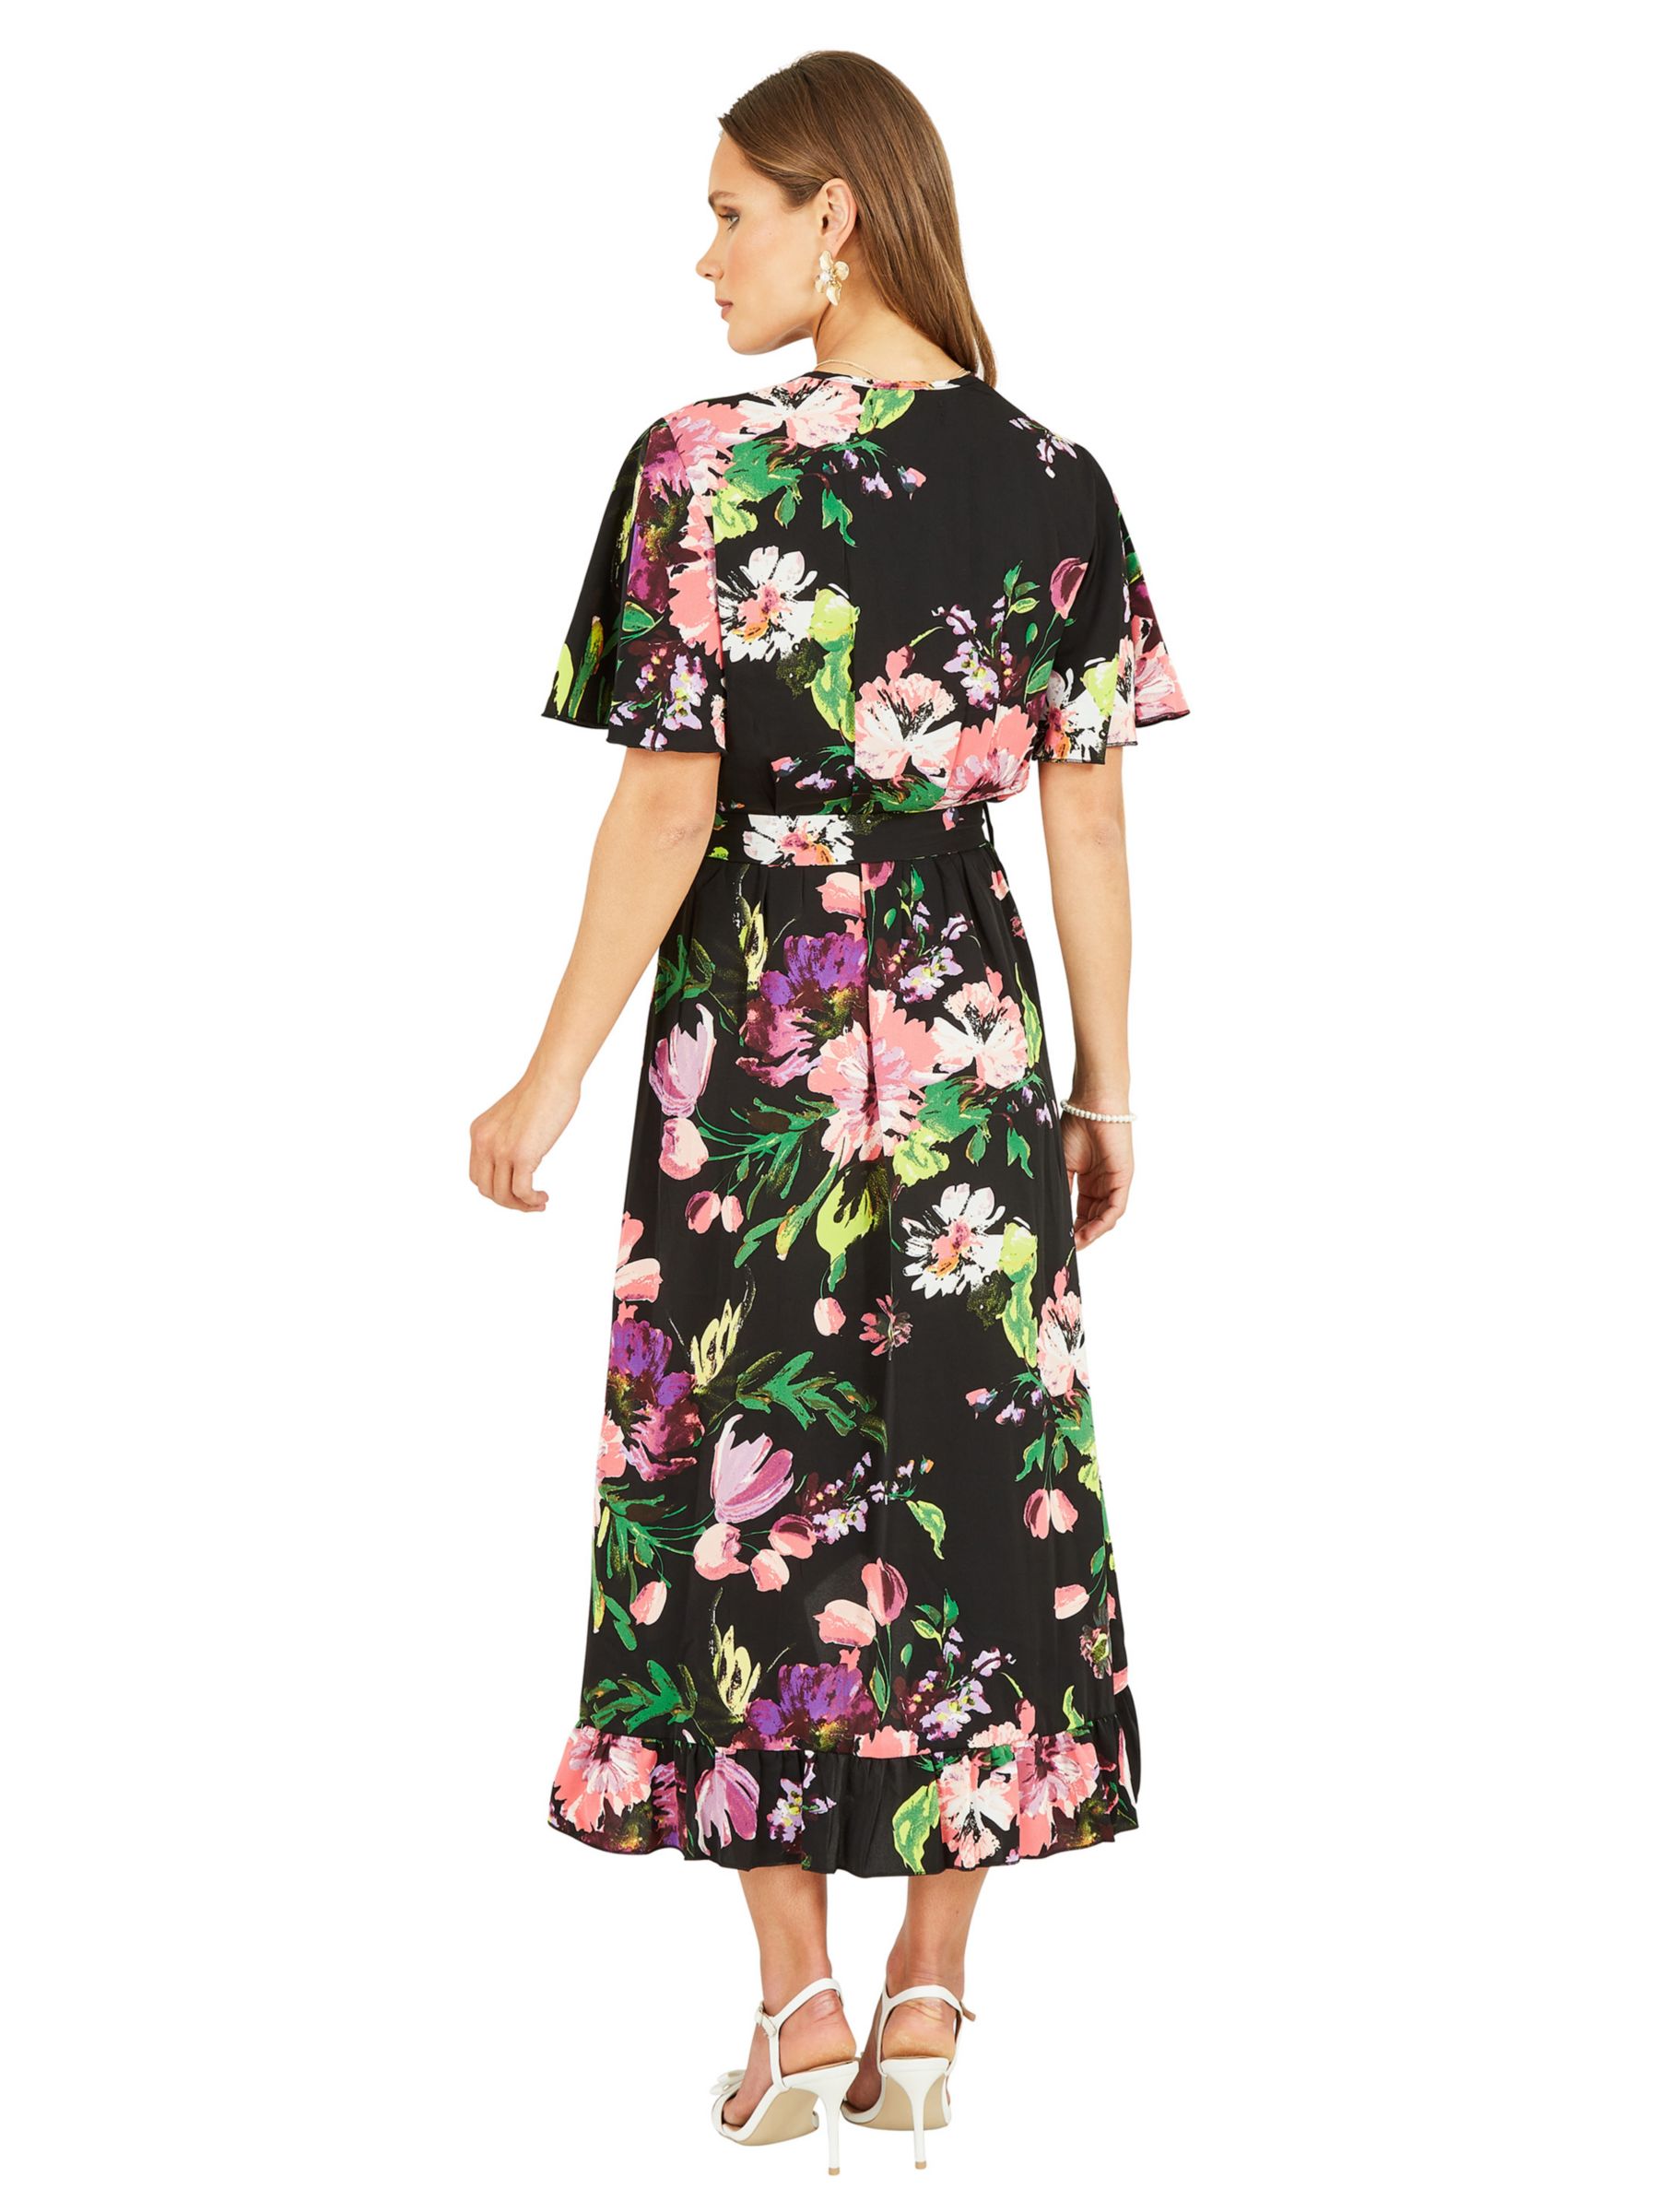 Mela London Floral Print Wrap Midi Dress, Black, 26